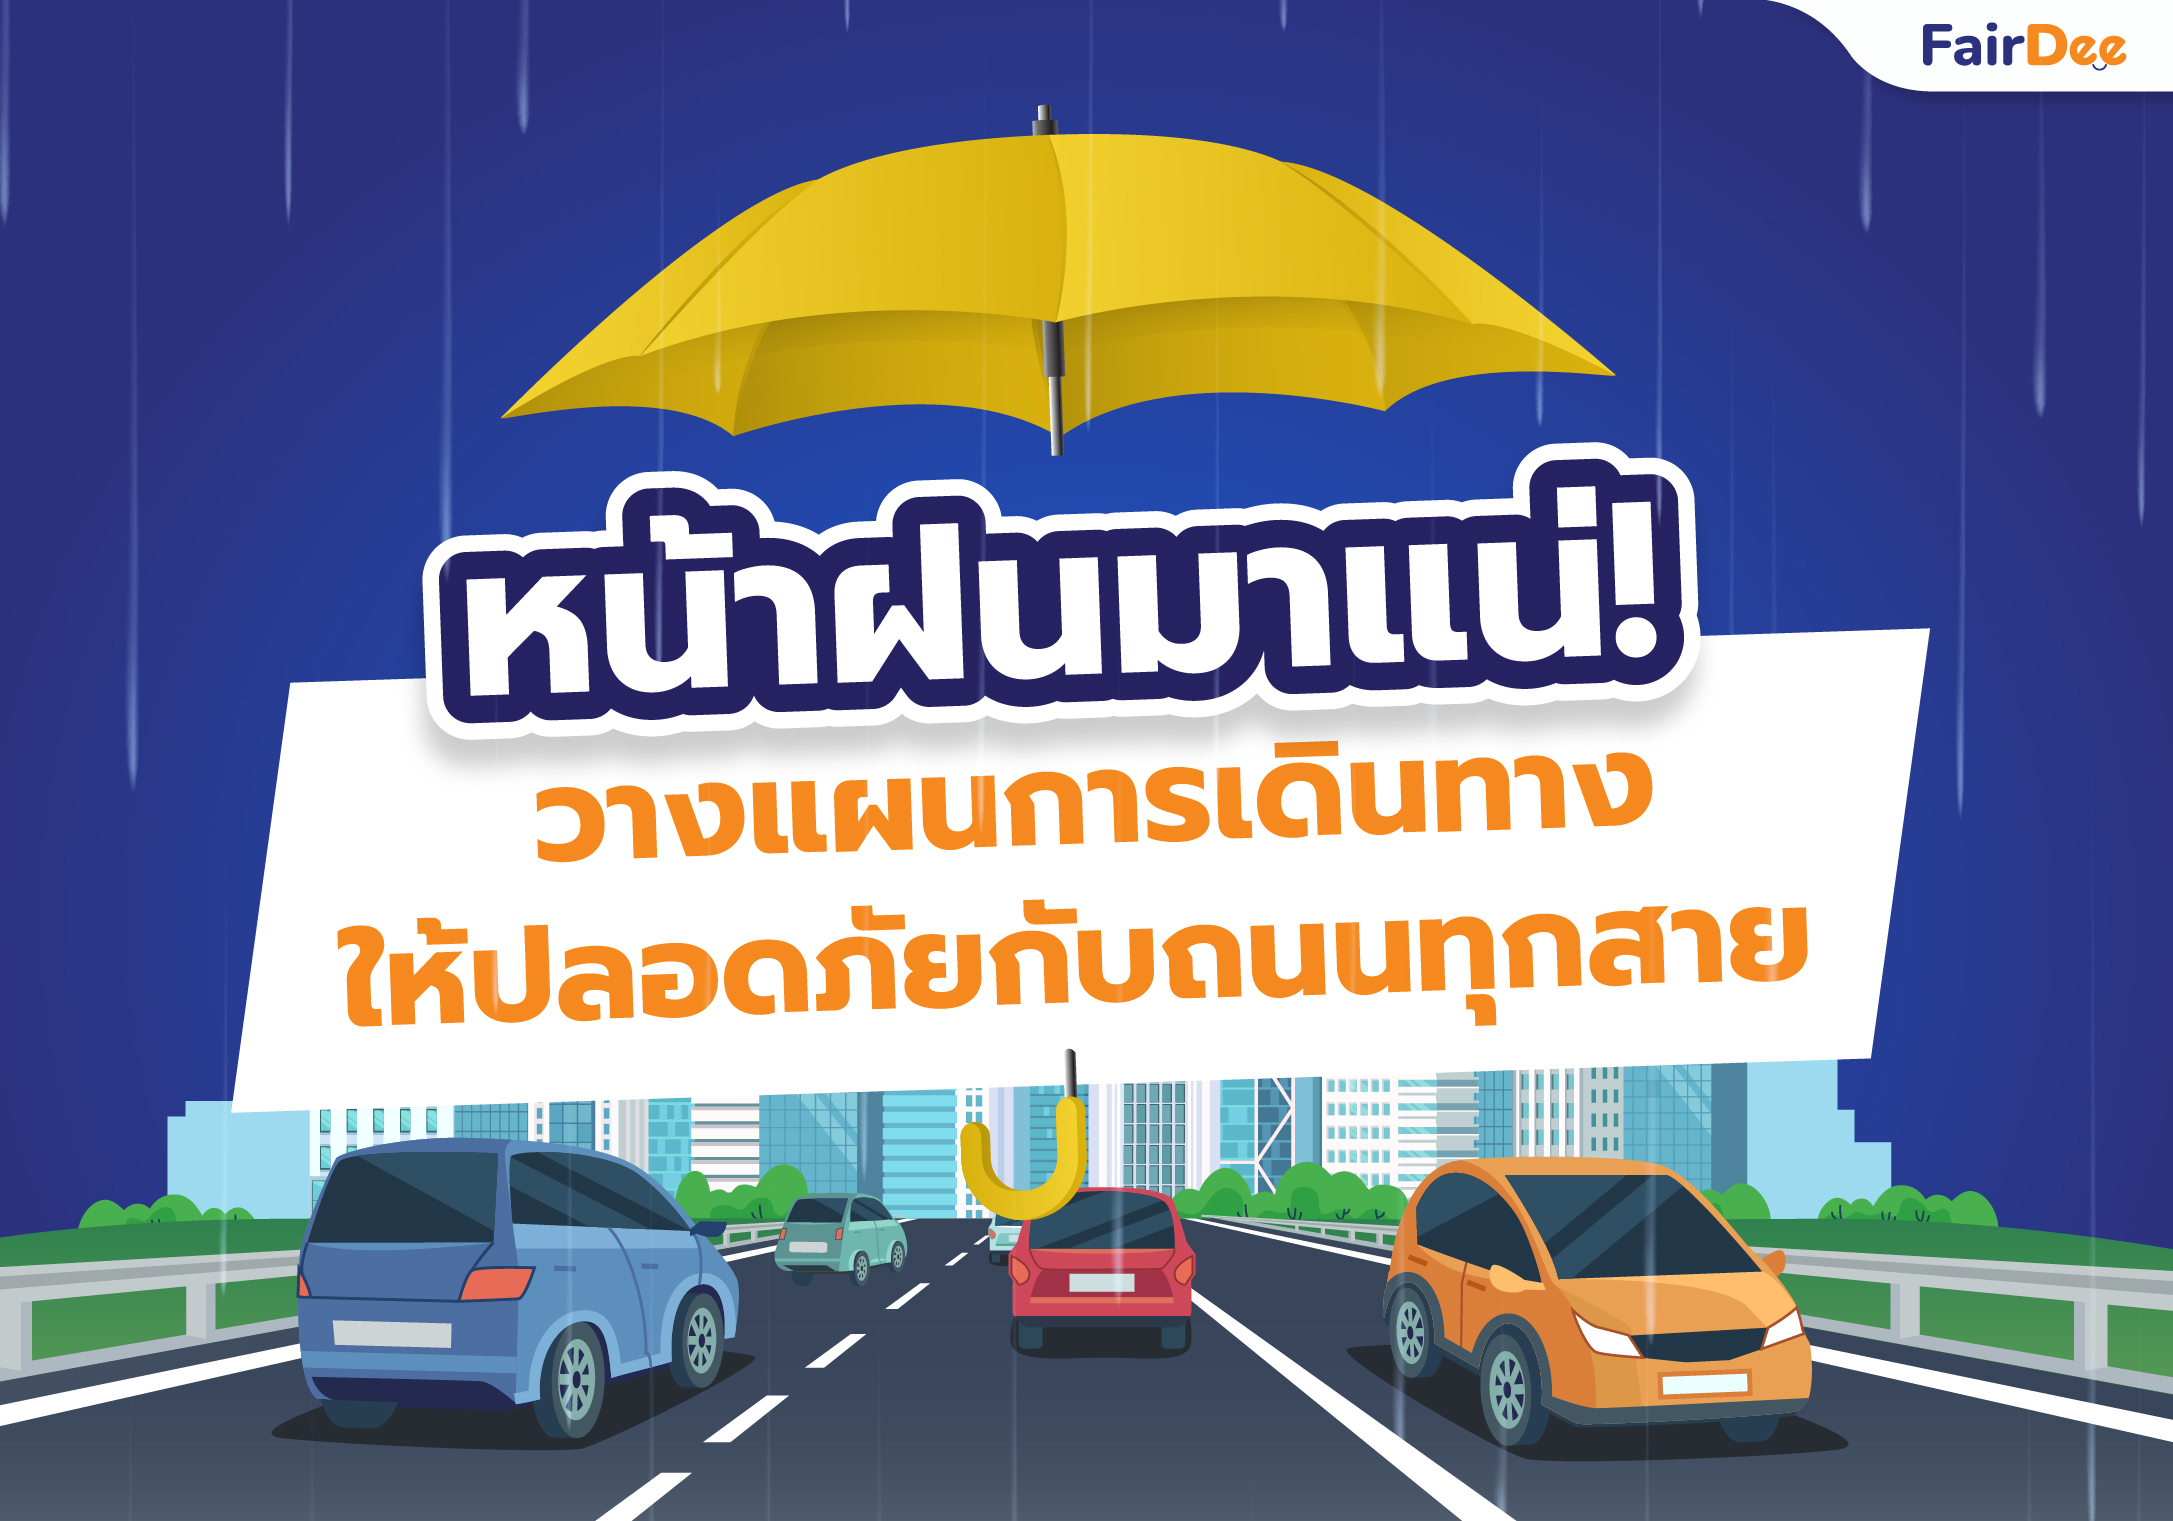 หน้าฝนมาแน่! วางแผนการเดินทางให้ปลอดภัยกับถนนทุกสาย